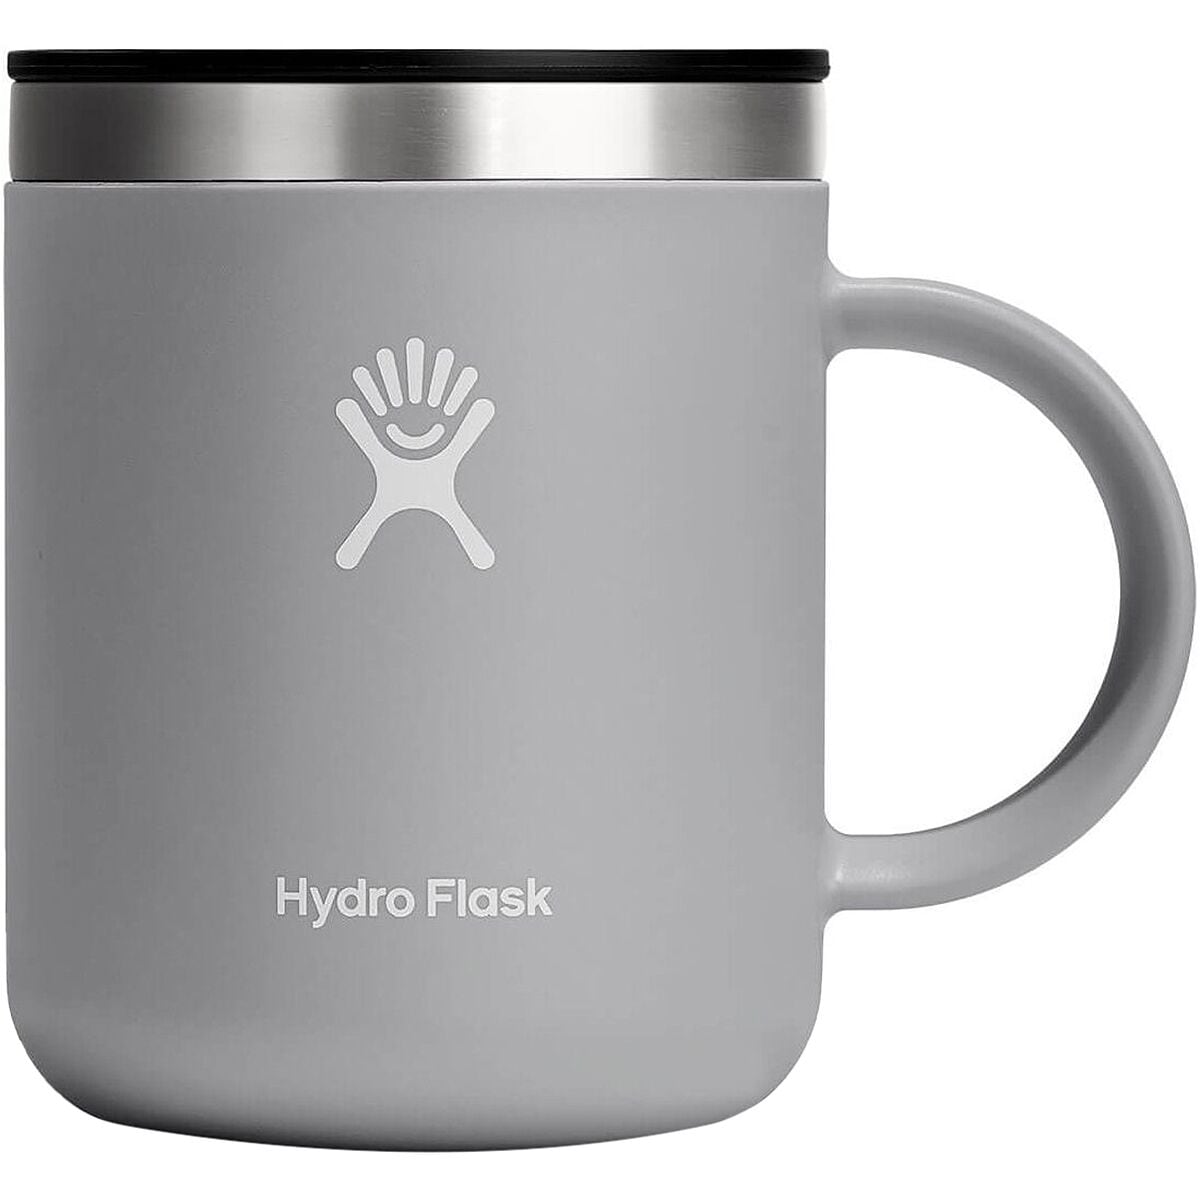 Surly Hydro Flask Camp Mug - Gray